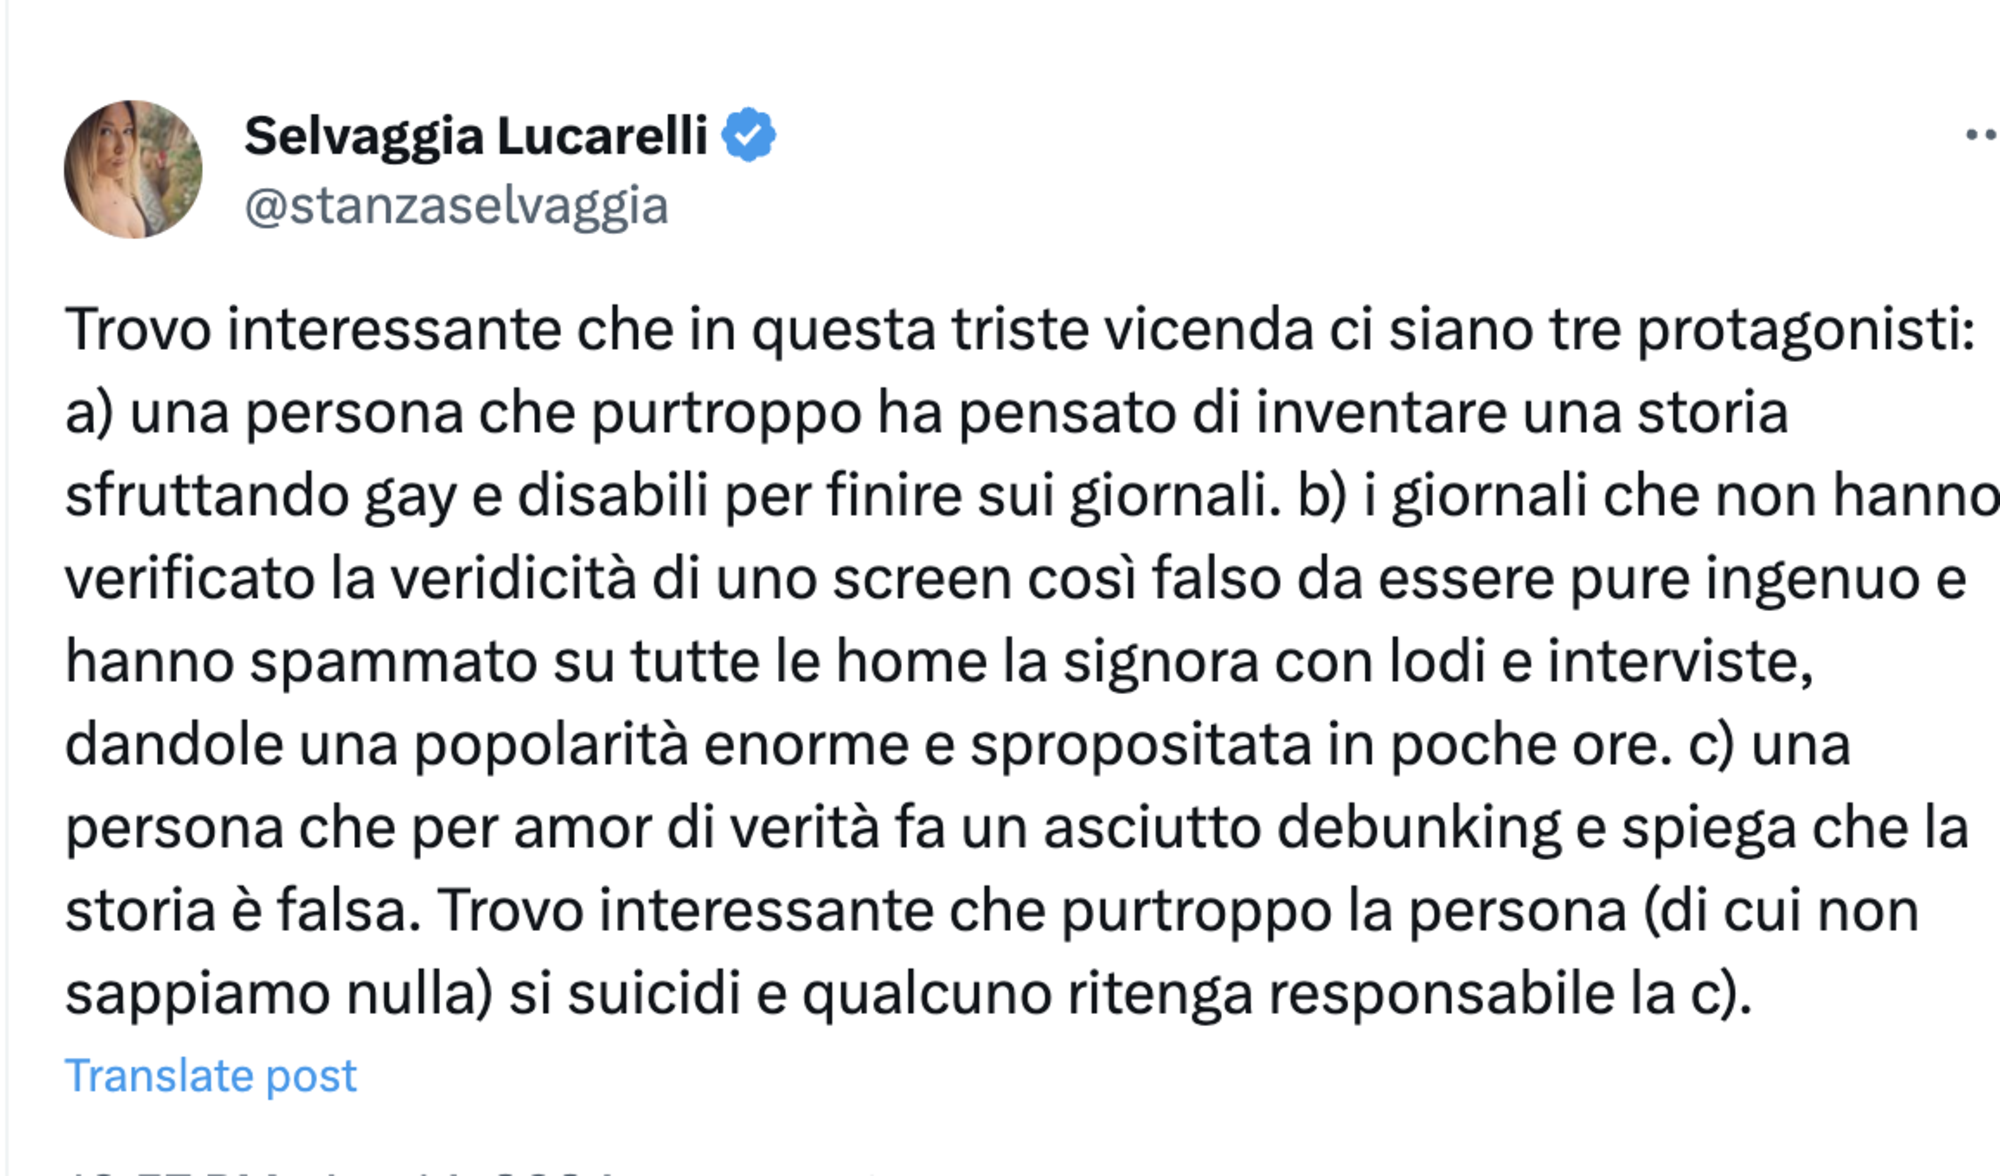 Selvaggia Lucarelli